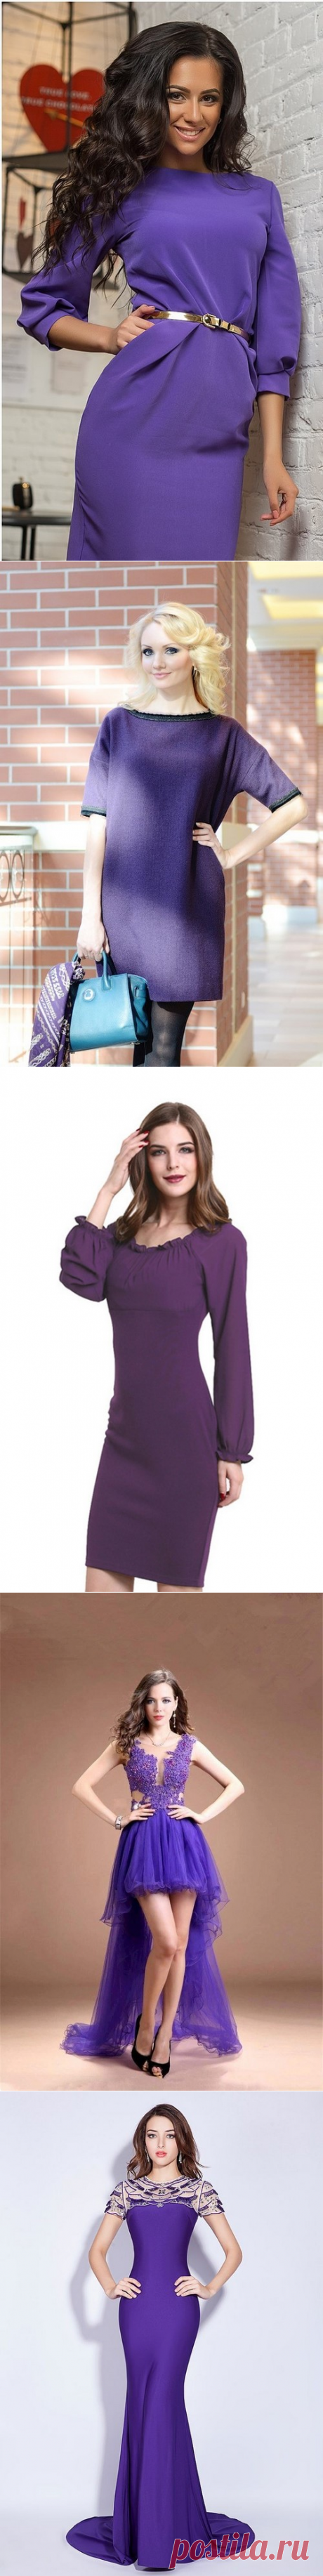 Модные фиолетовые платья - фото, новинки, фасоны, красивые фиолетовые платья с чем носить